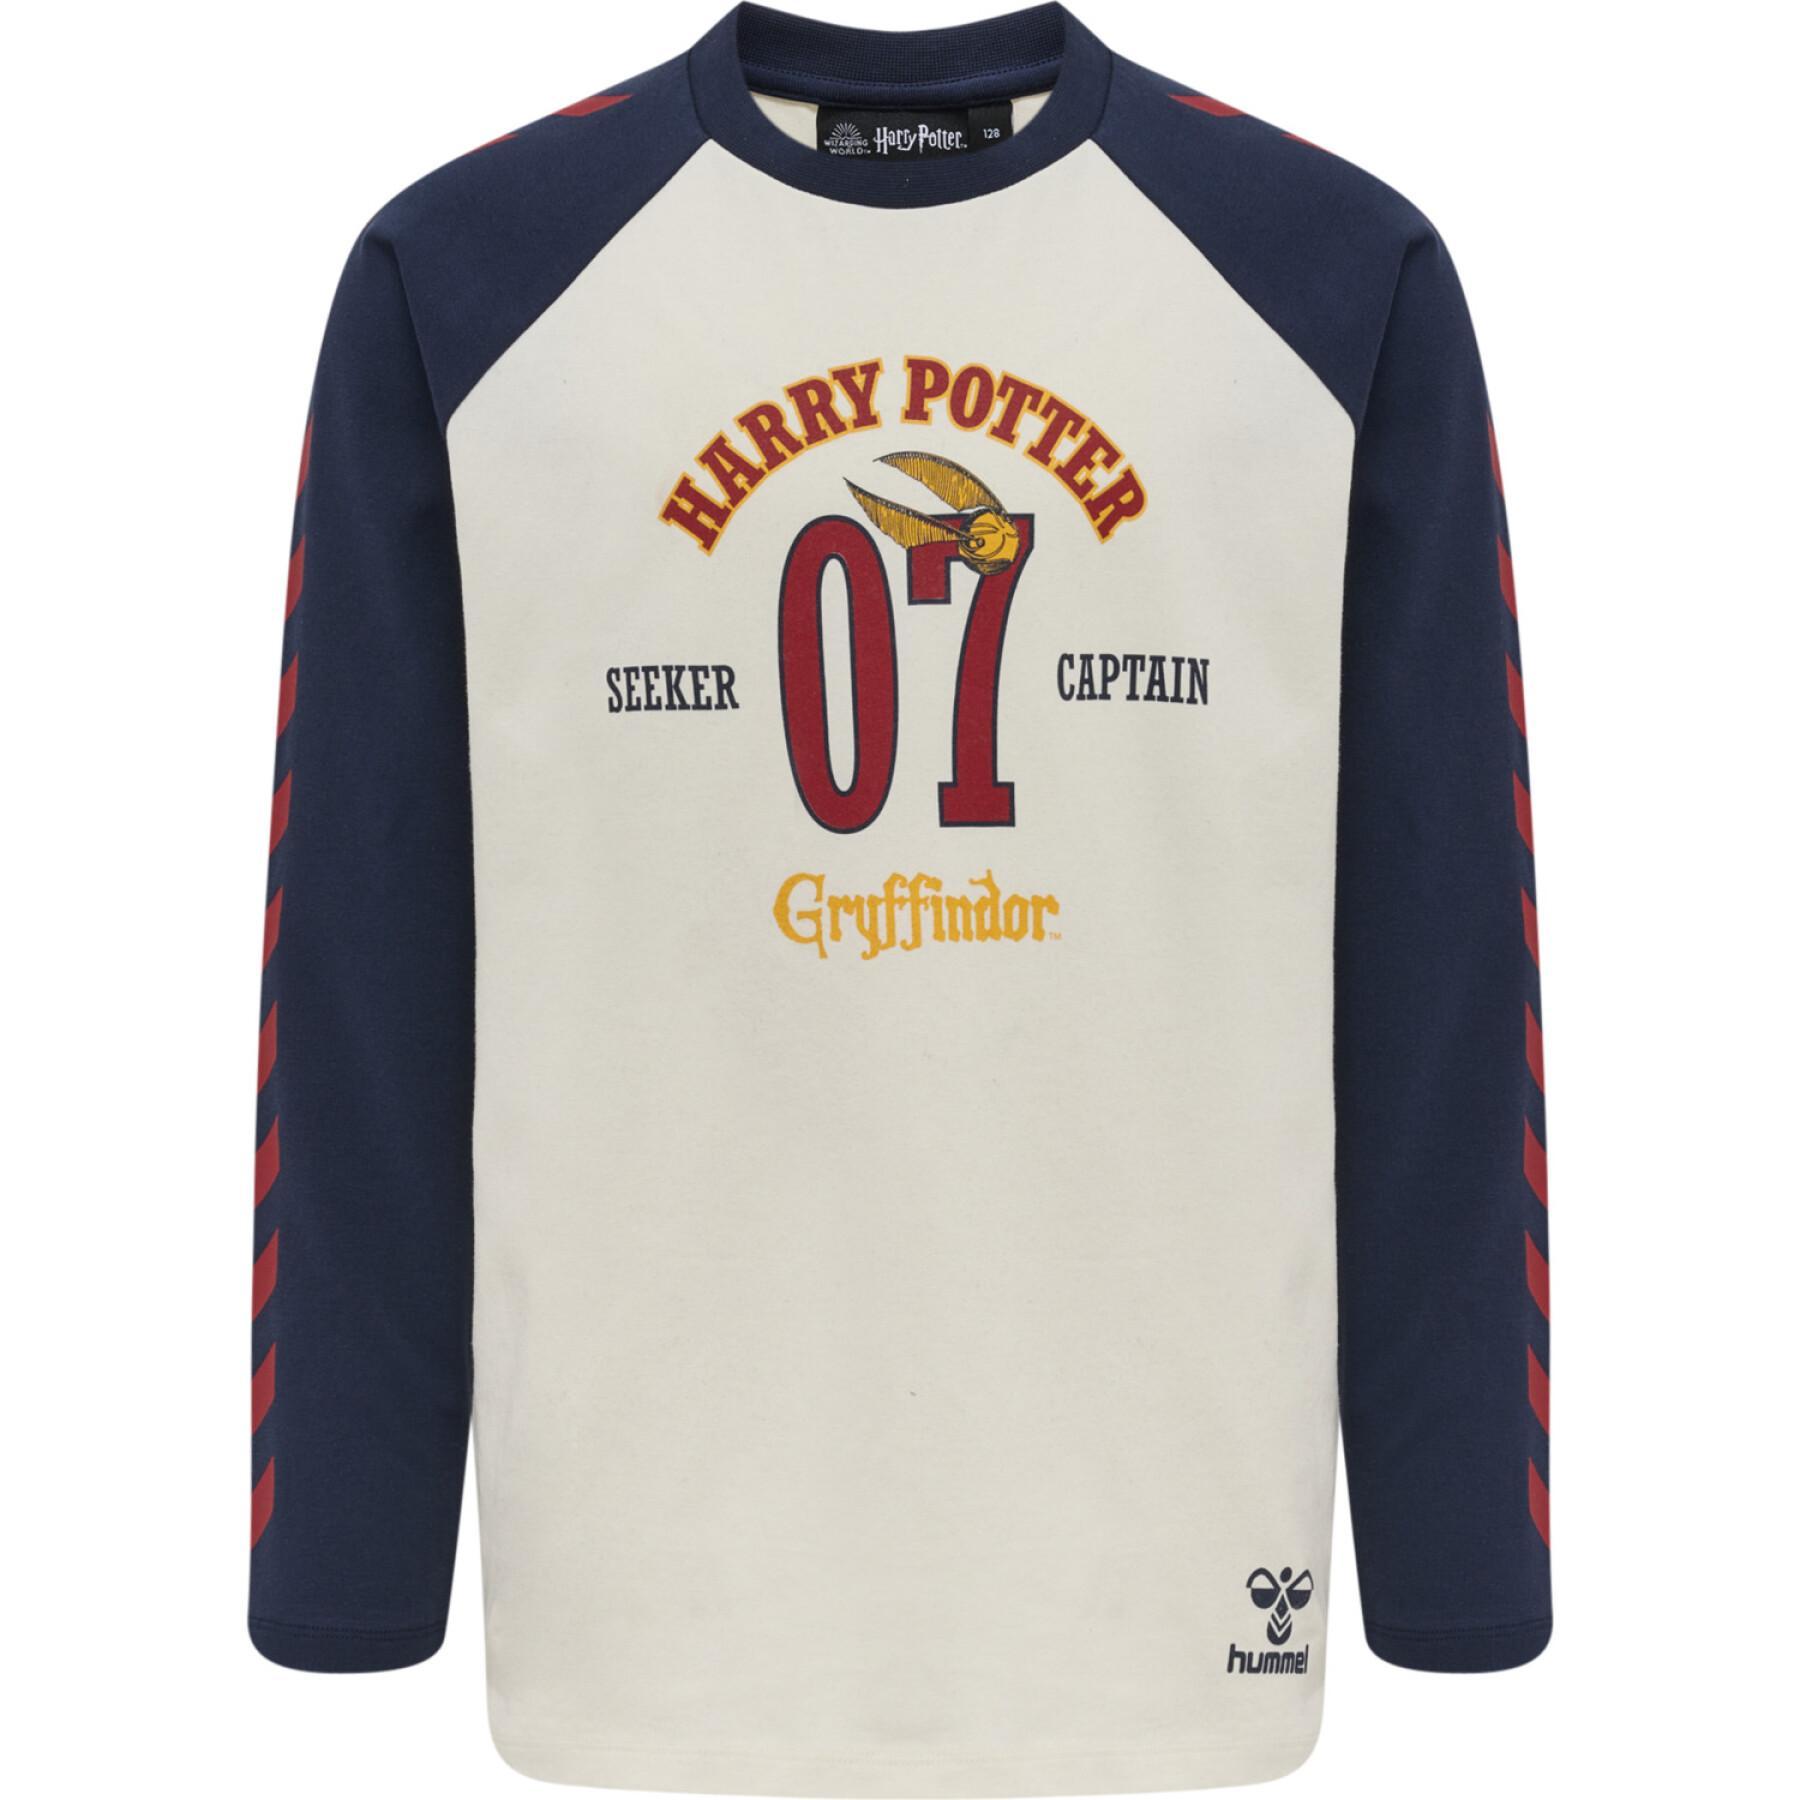 Camiseta de manga larga para niños Hummel Harry Potter